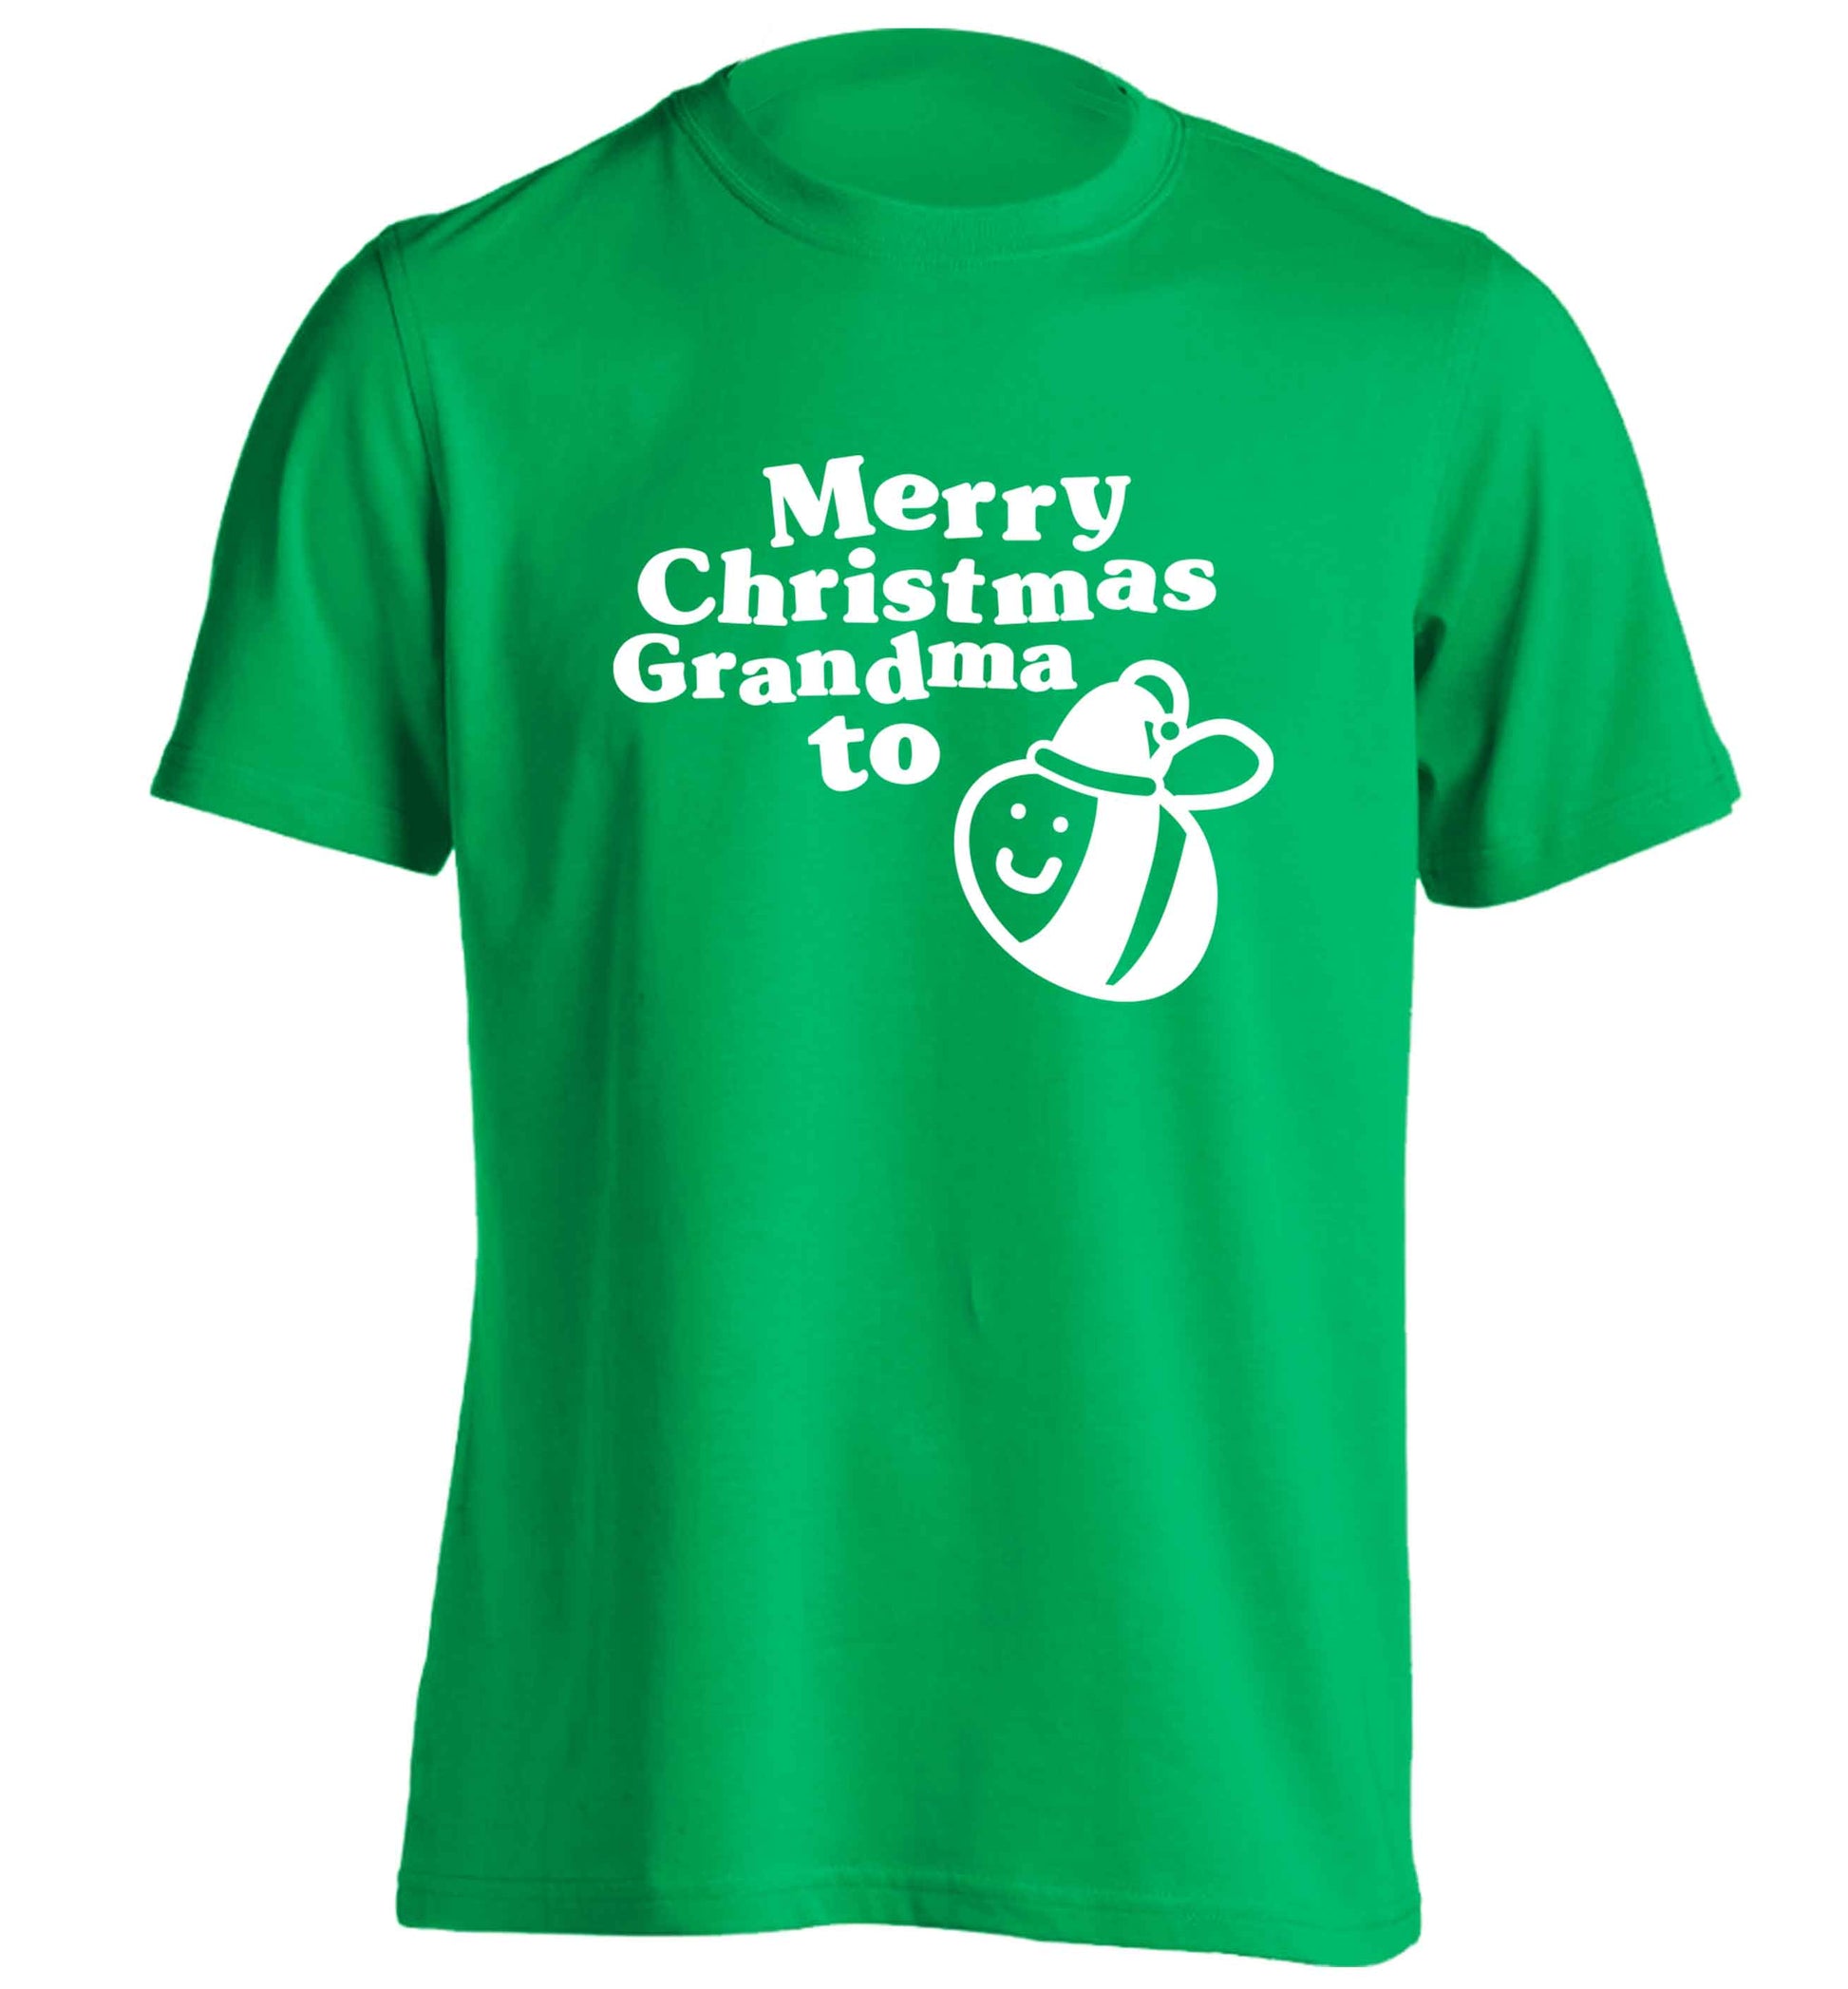 Merry Christmas grandma to be adults unisex green Tshirt 2XL